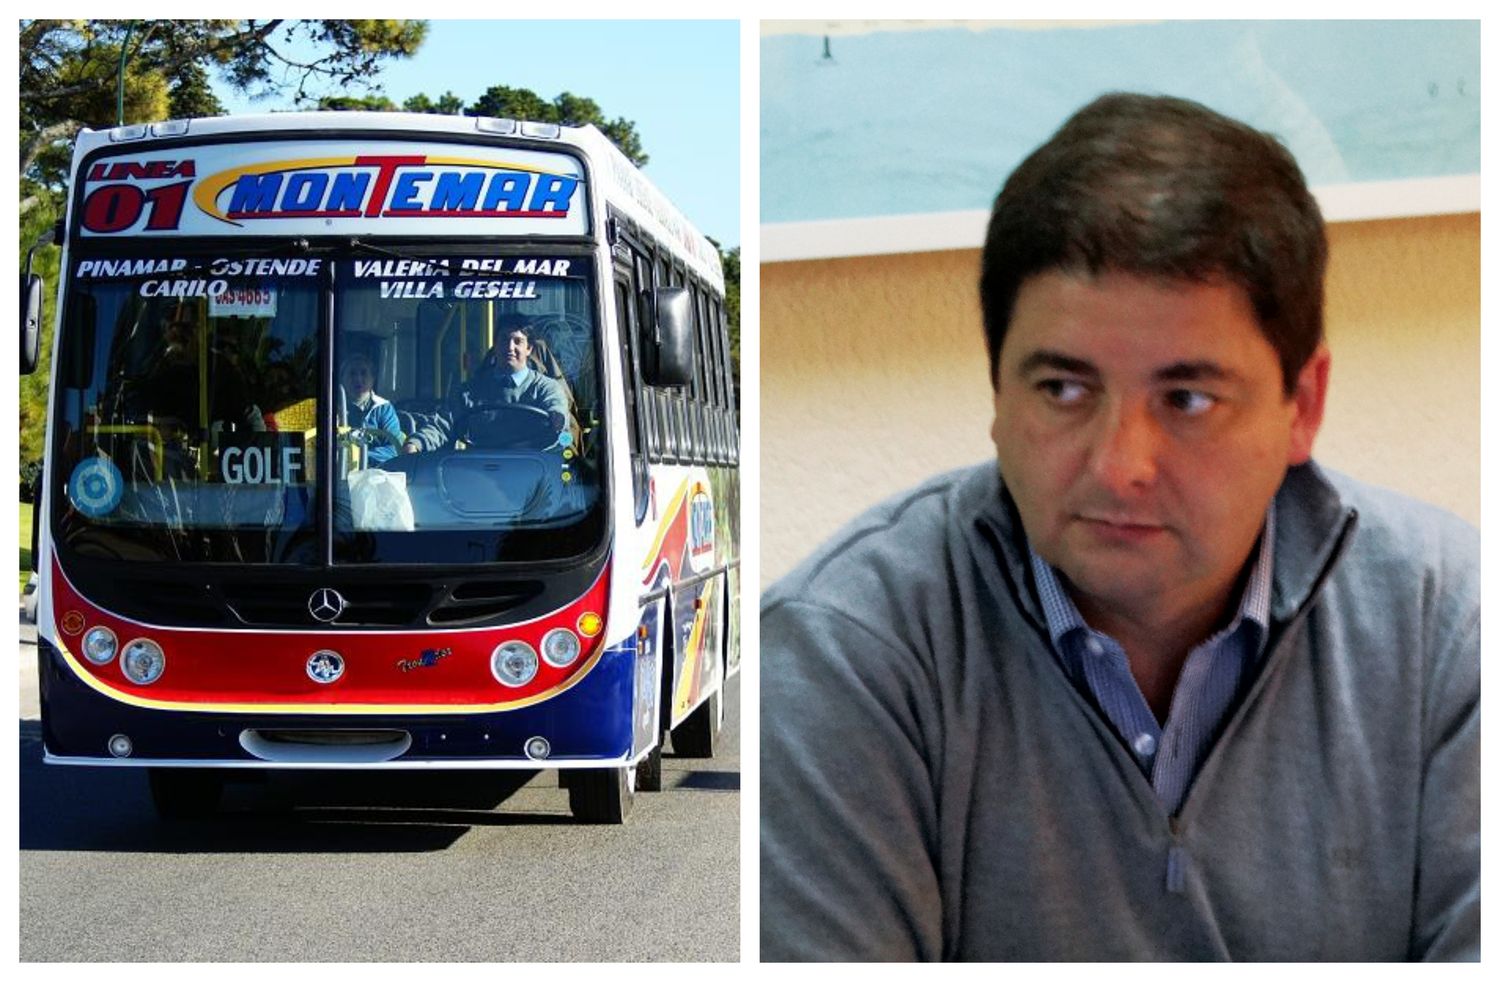 Pinamar: Preocupación por la falta de funcionamiento de la empresa Montemar